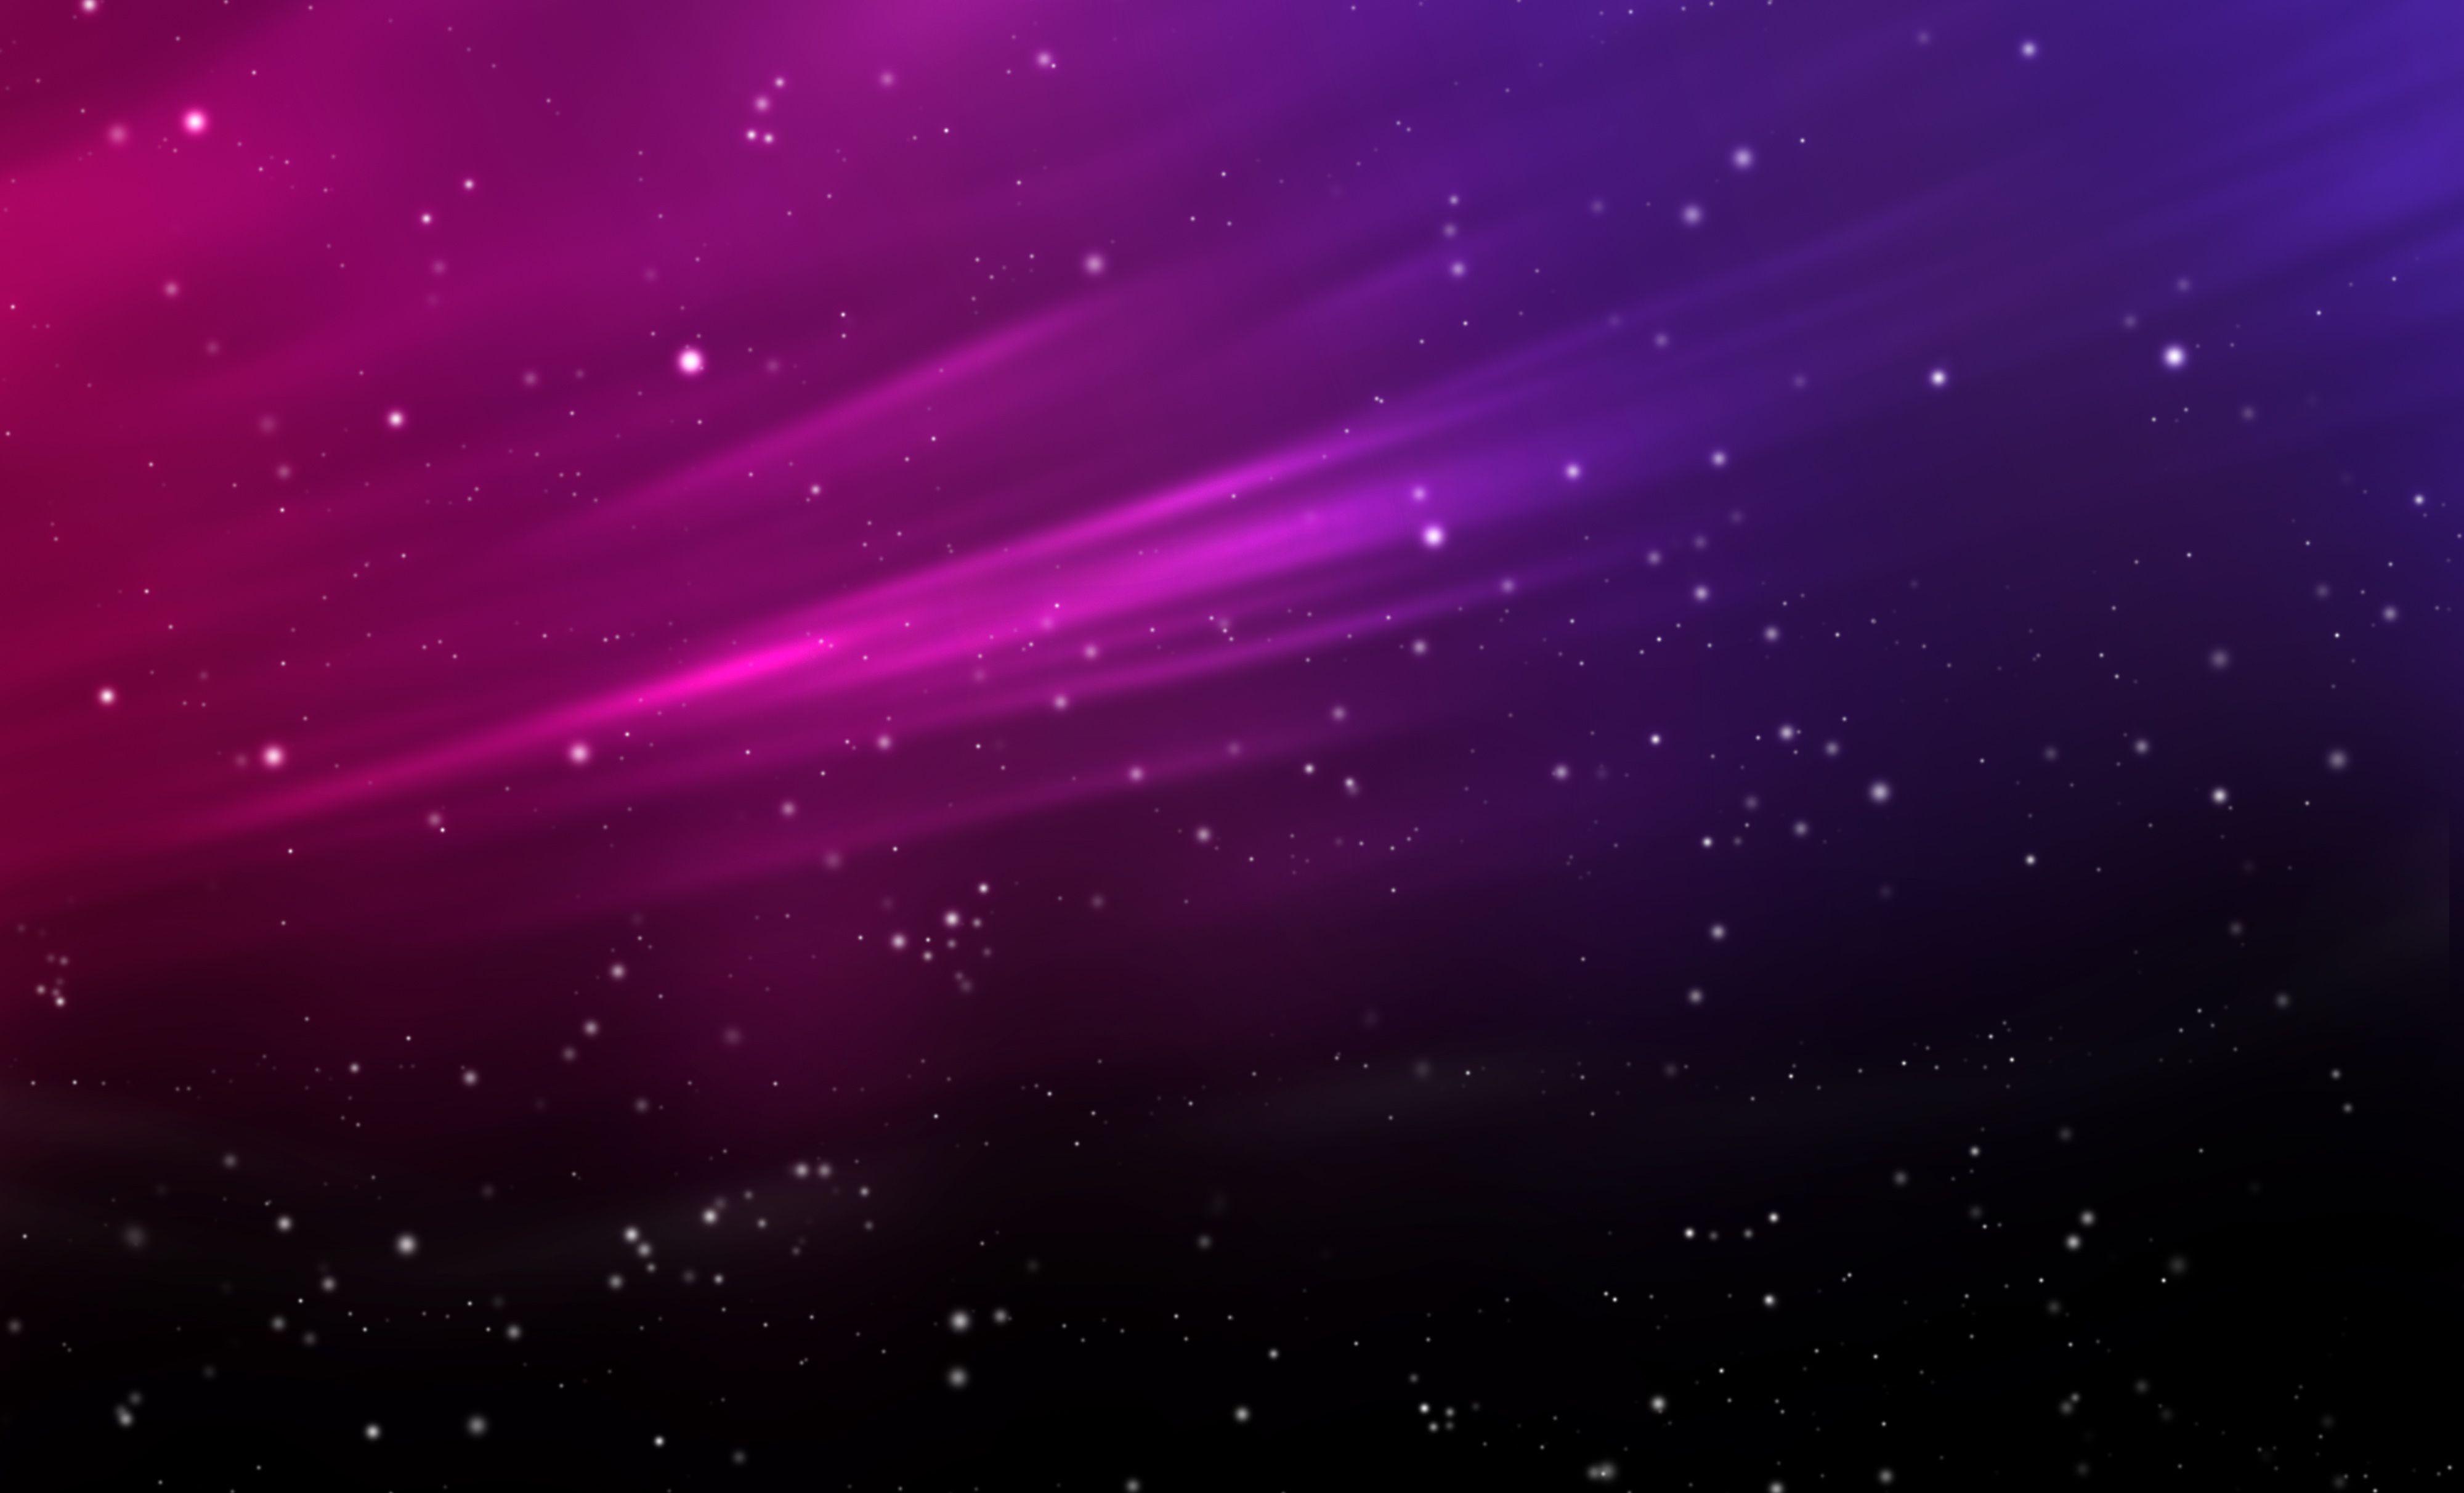 Hình nền máy tính màu hồng tím sẽ mang đến cho bạn một không gian làm việc hoặc giải trí vô cùng độc đáo. Sự kết hợp giữa màu hồng và tím tạo nên một không gian tràn đầy năng lượng và tình cảm. Hãy cùng tận hưởng hình ảnh để thêm động lực cho công việc và cuộc sống của bạn.